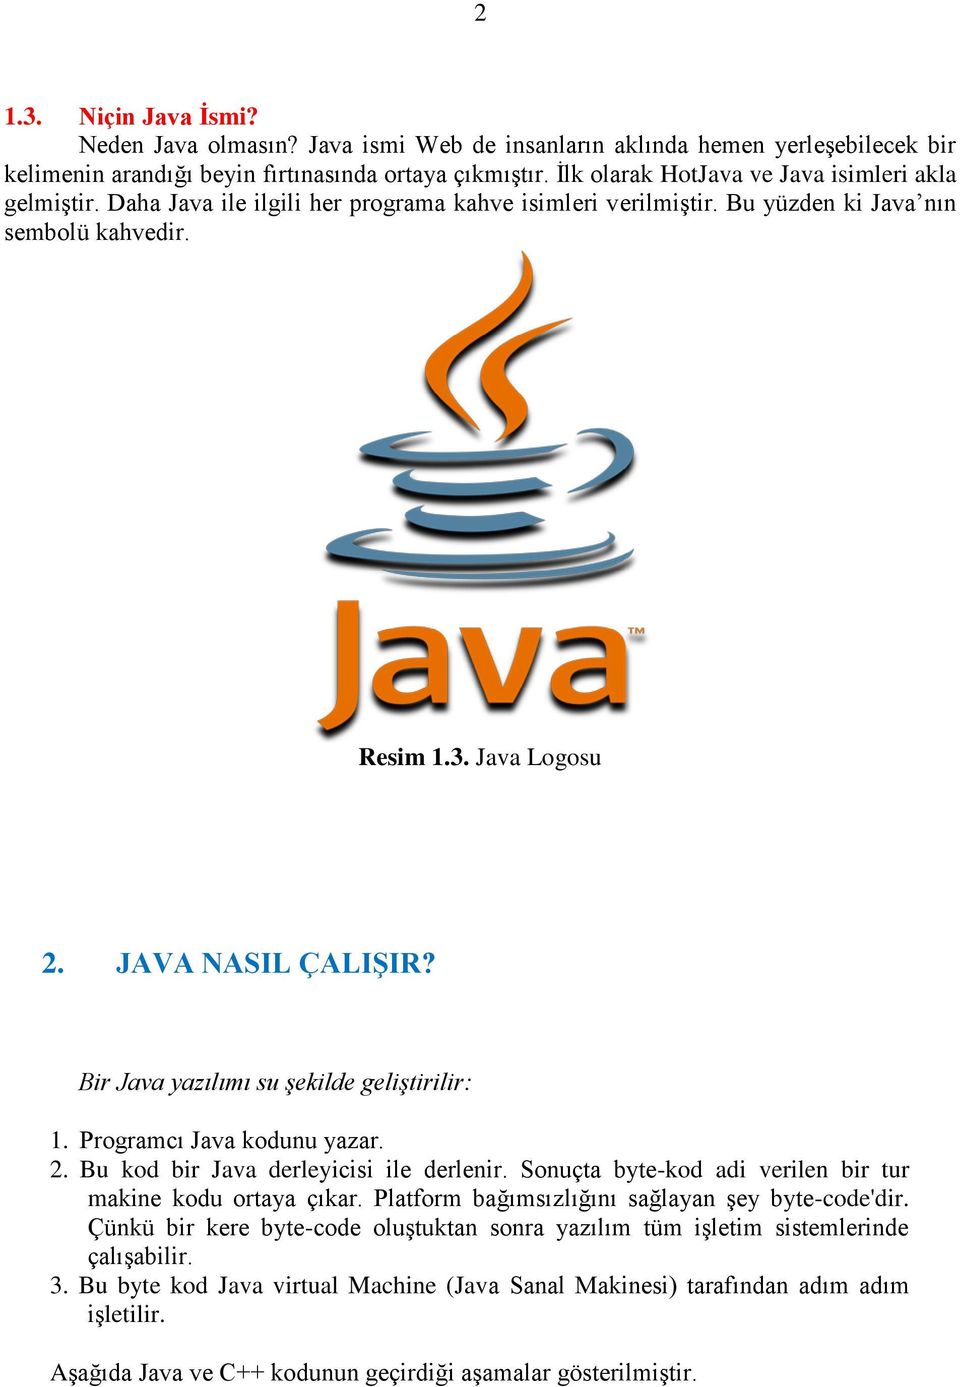 Bir Java yazılımı su şekilde geliştirilir: 1. Programcı Java kodunu yazar. 2. Bu kod bir Java derleyicisi ile derlenir. Sonuçta byte-kod adi verilen bir tur makine kodu ortaya çıkar.